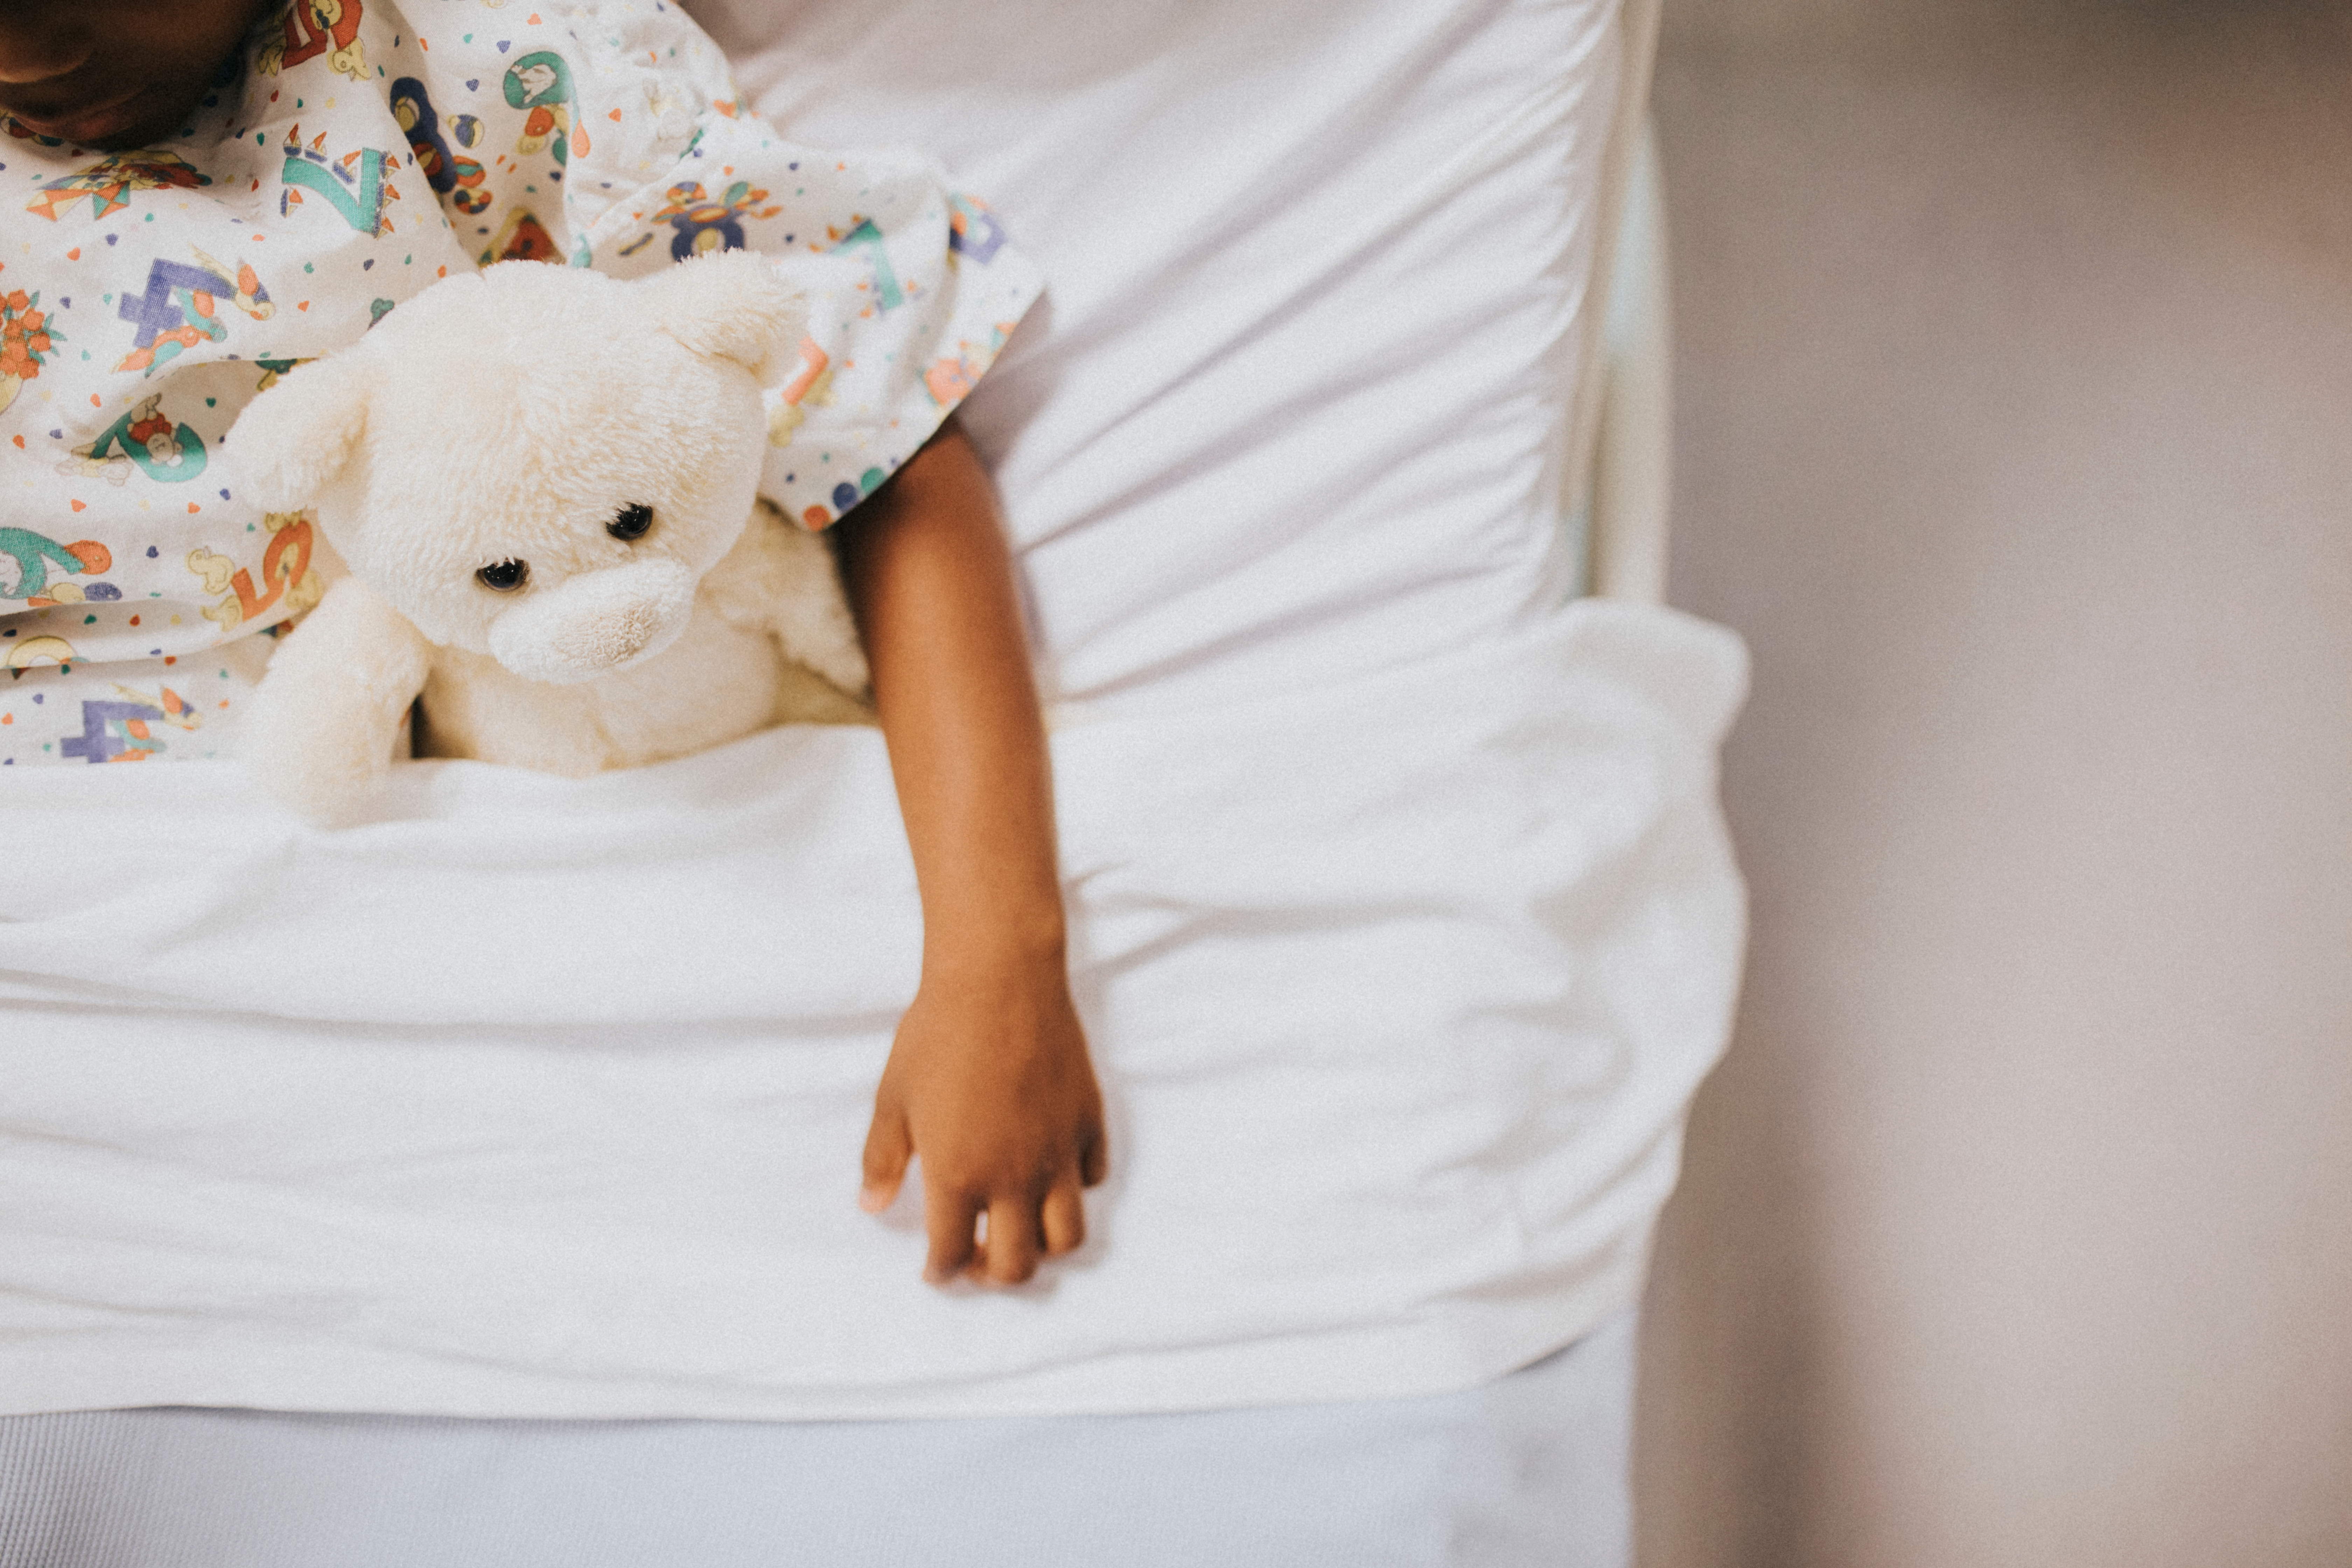 Niña durmiendo en una cama de hospital | Fuente: Shutterstock